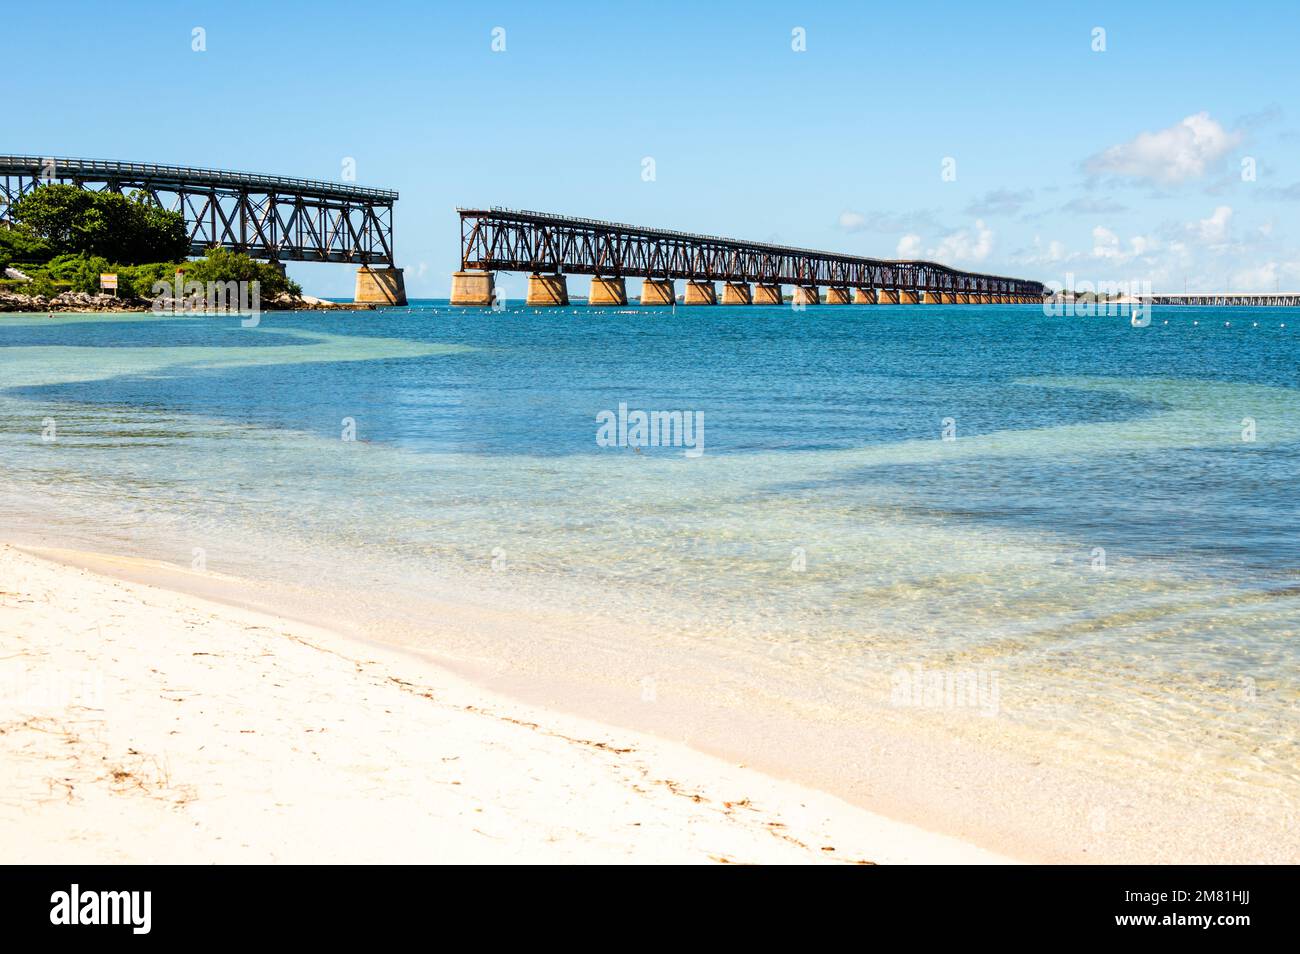 Abbandonato Florida Overseas ponte ferroviario sopra l'oceano blu acqua del Golfo del Messico, Calusa spiaggia in Florida Keys, Bahia Honda state Park, Foto Stock